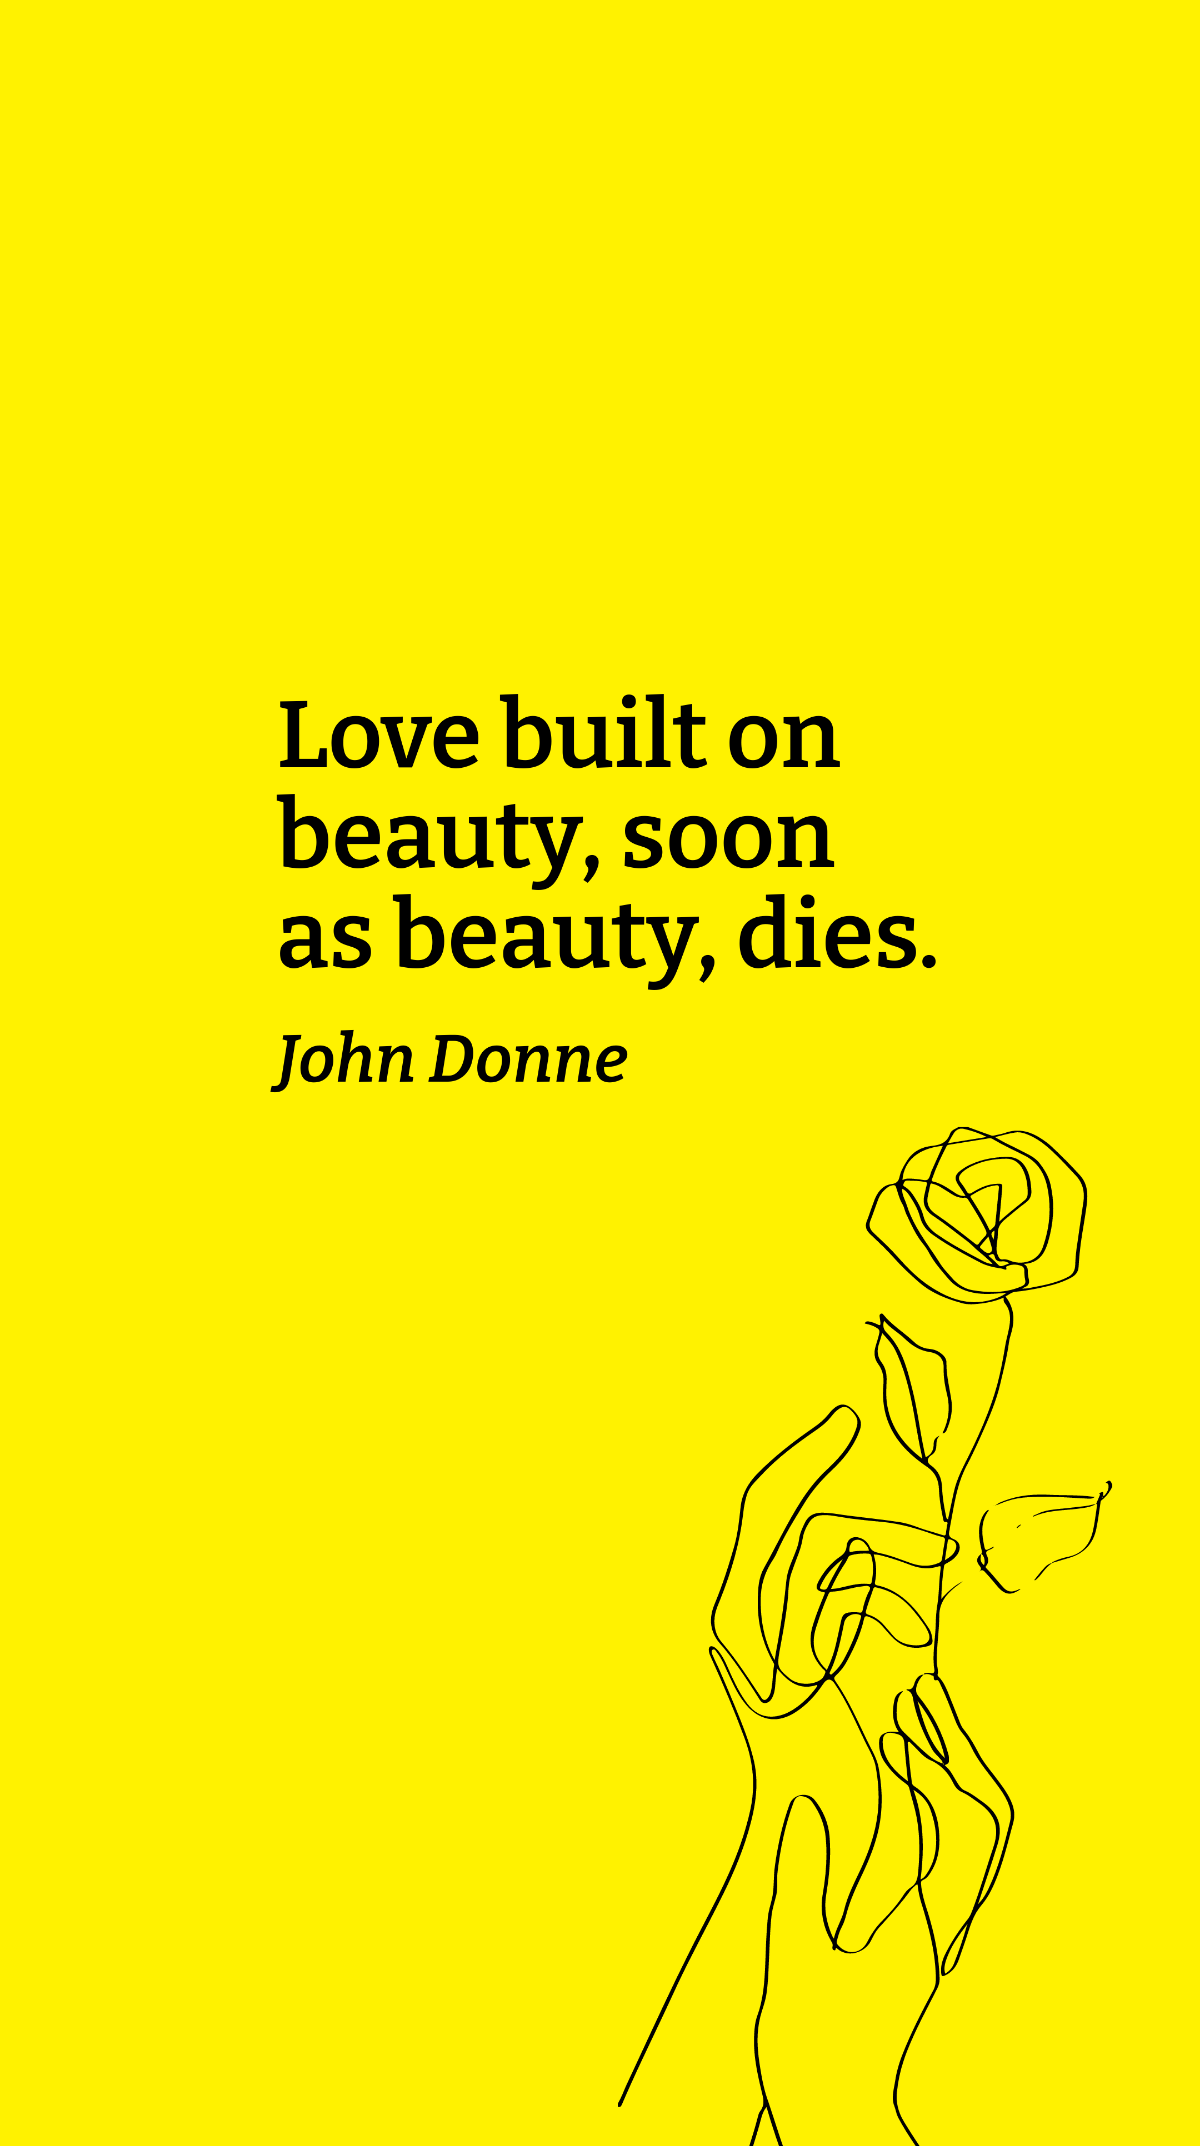 John Donne - Love built on beauty, soon as beauty, dies. Template